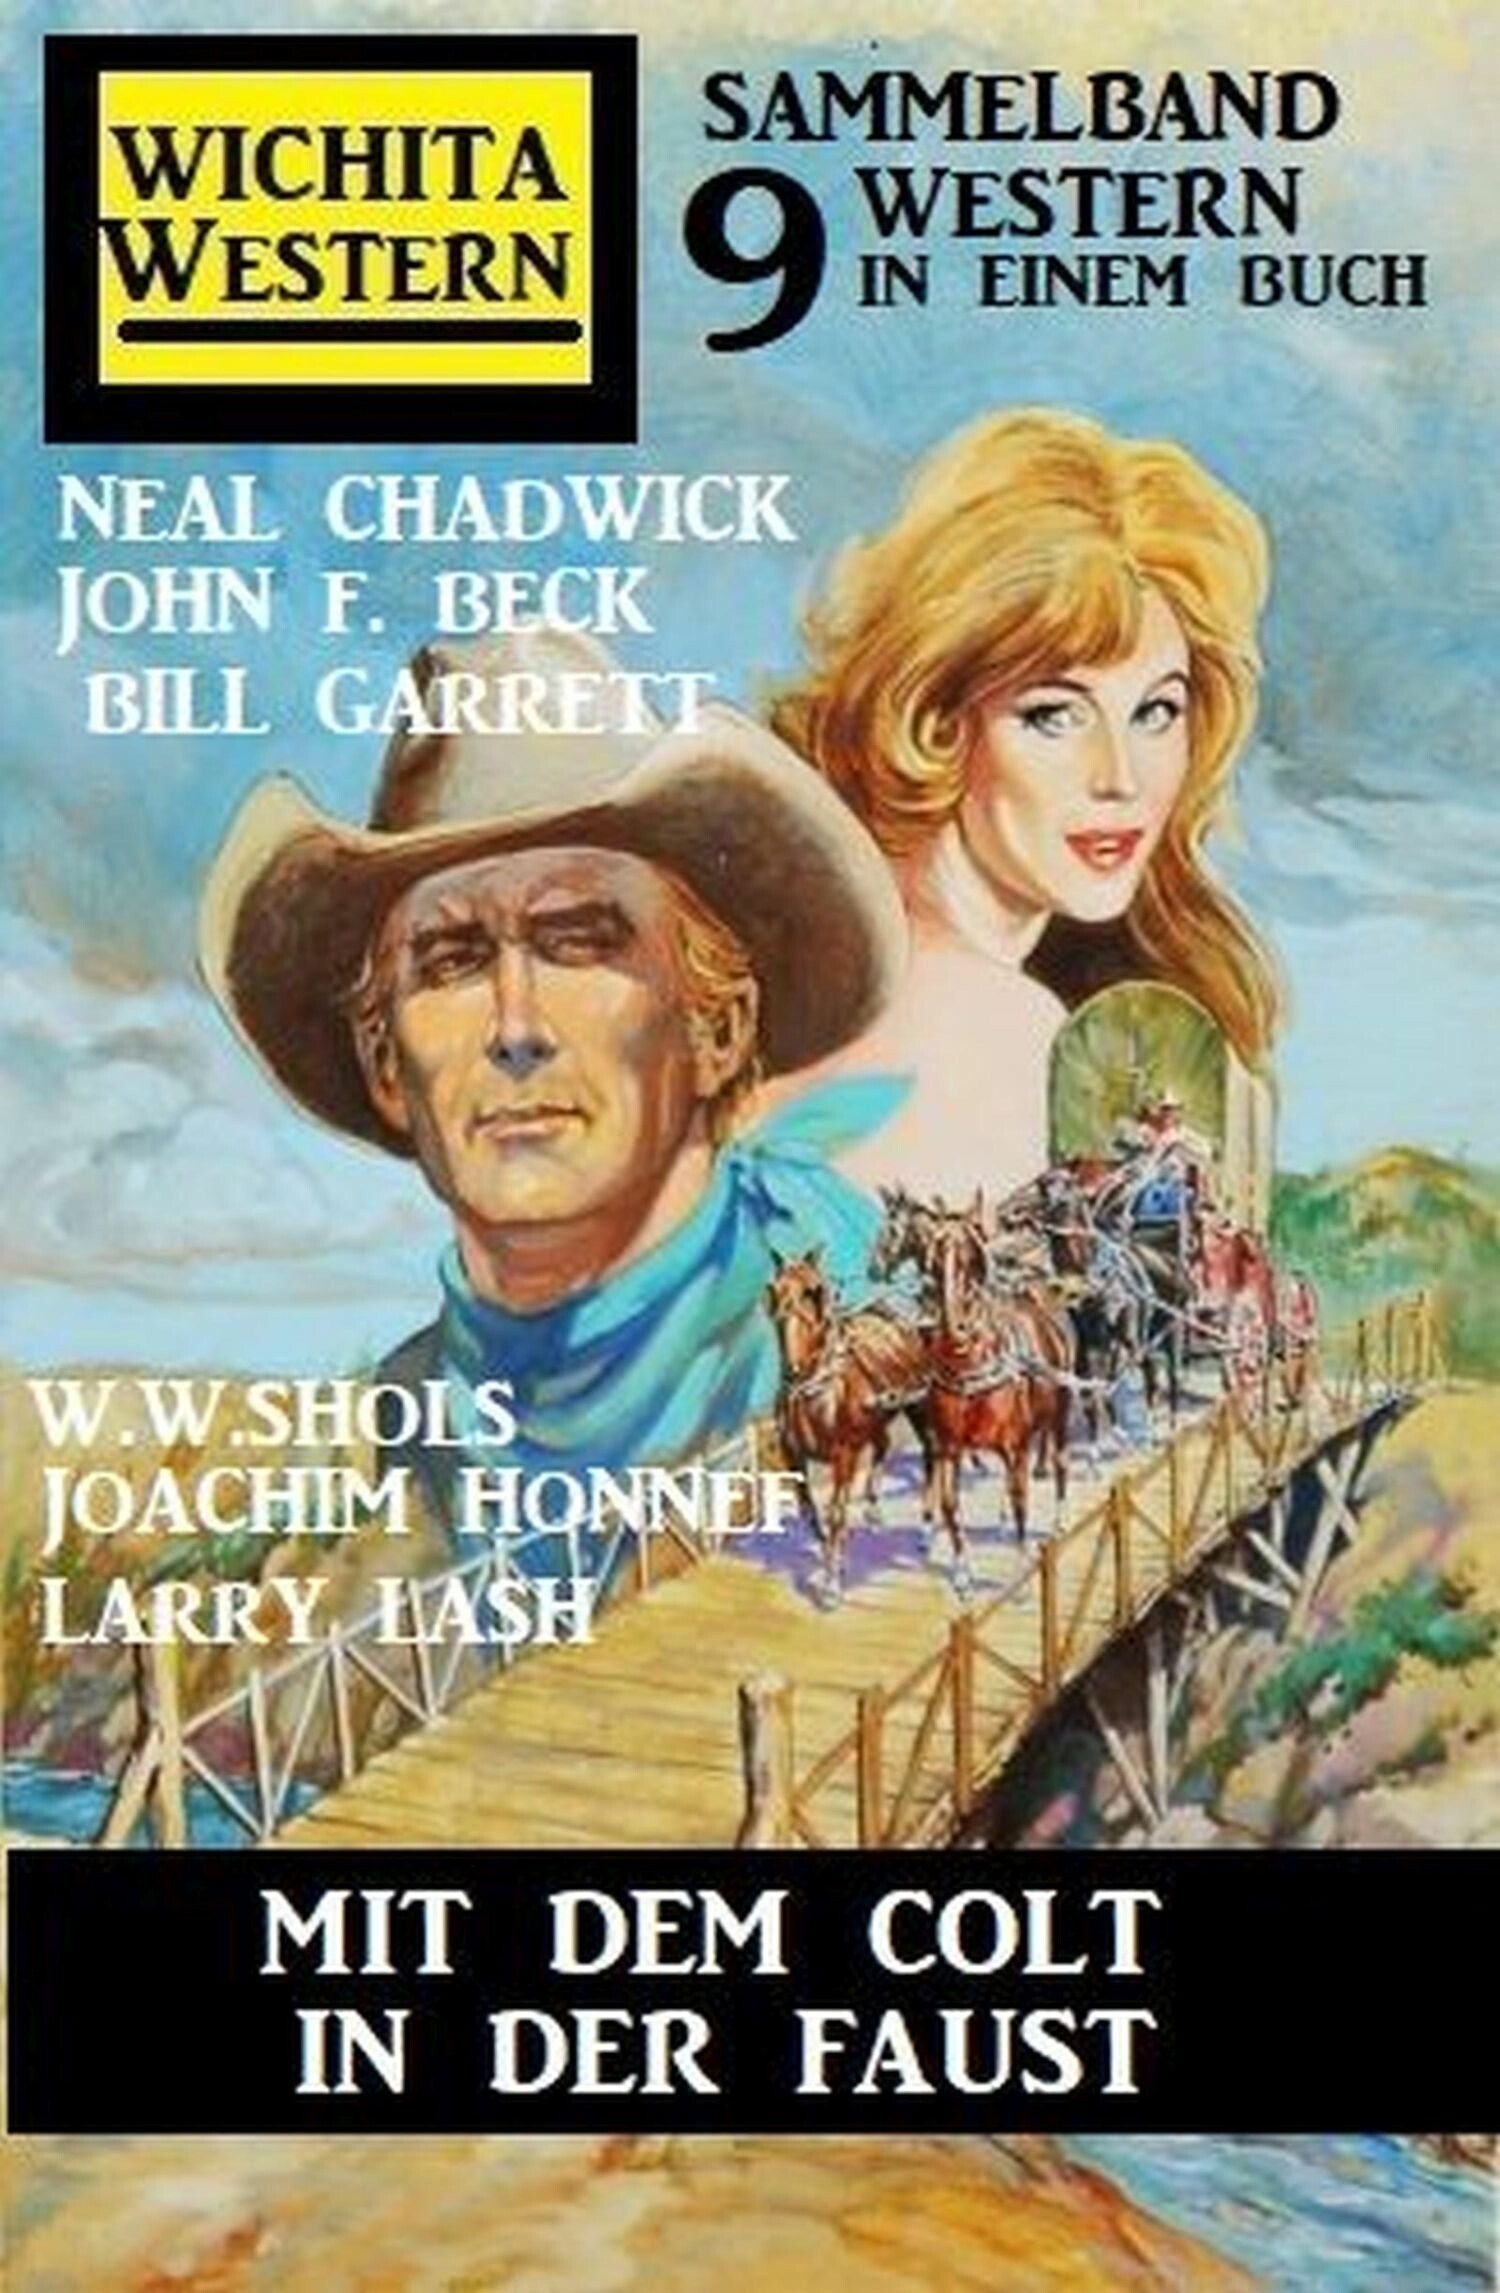 Mit dem Colt in der Faust: Wichita Sammelband 9 Western